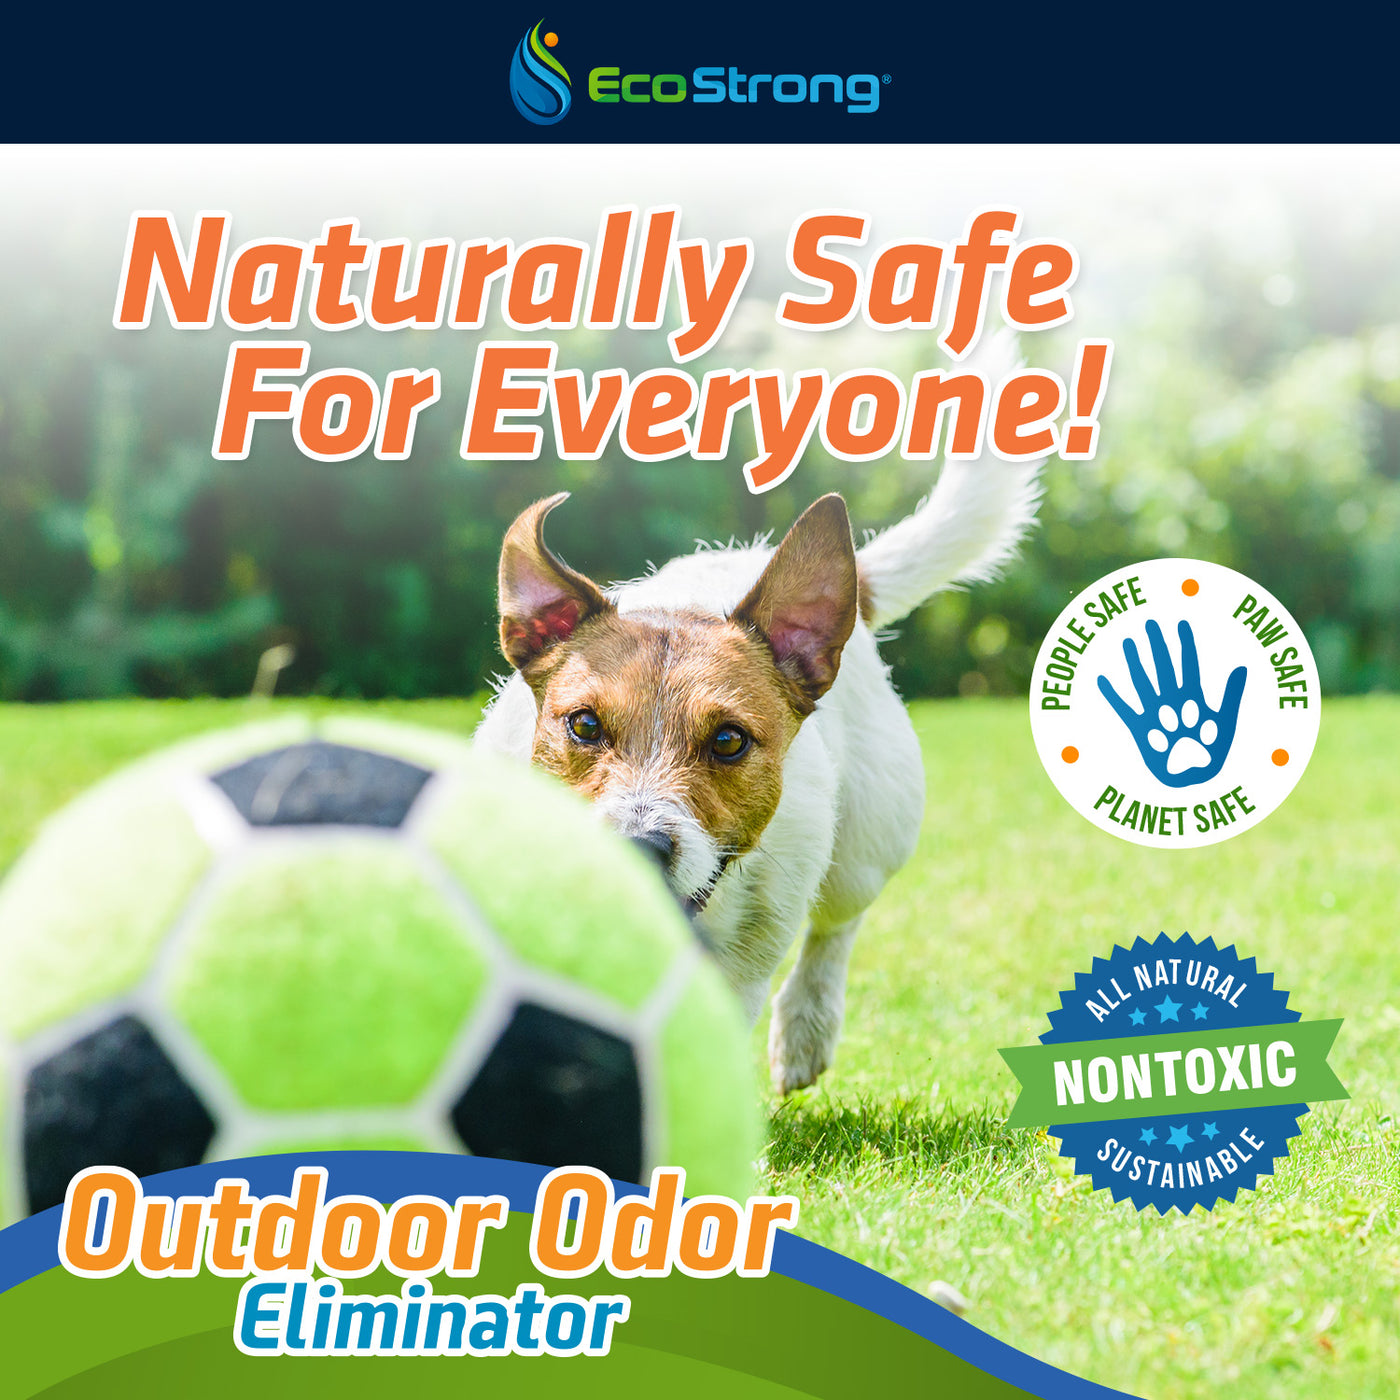 EcoStrong Outdoor Odor Eliminator 1 gallon sprayer #size_1-gallon-jug-and-hose-end-sprayer